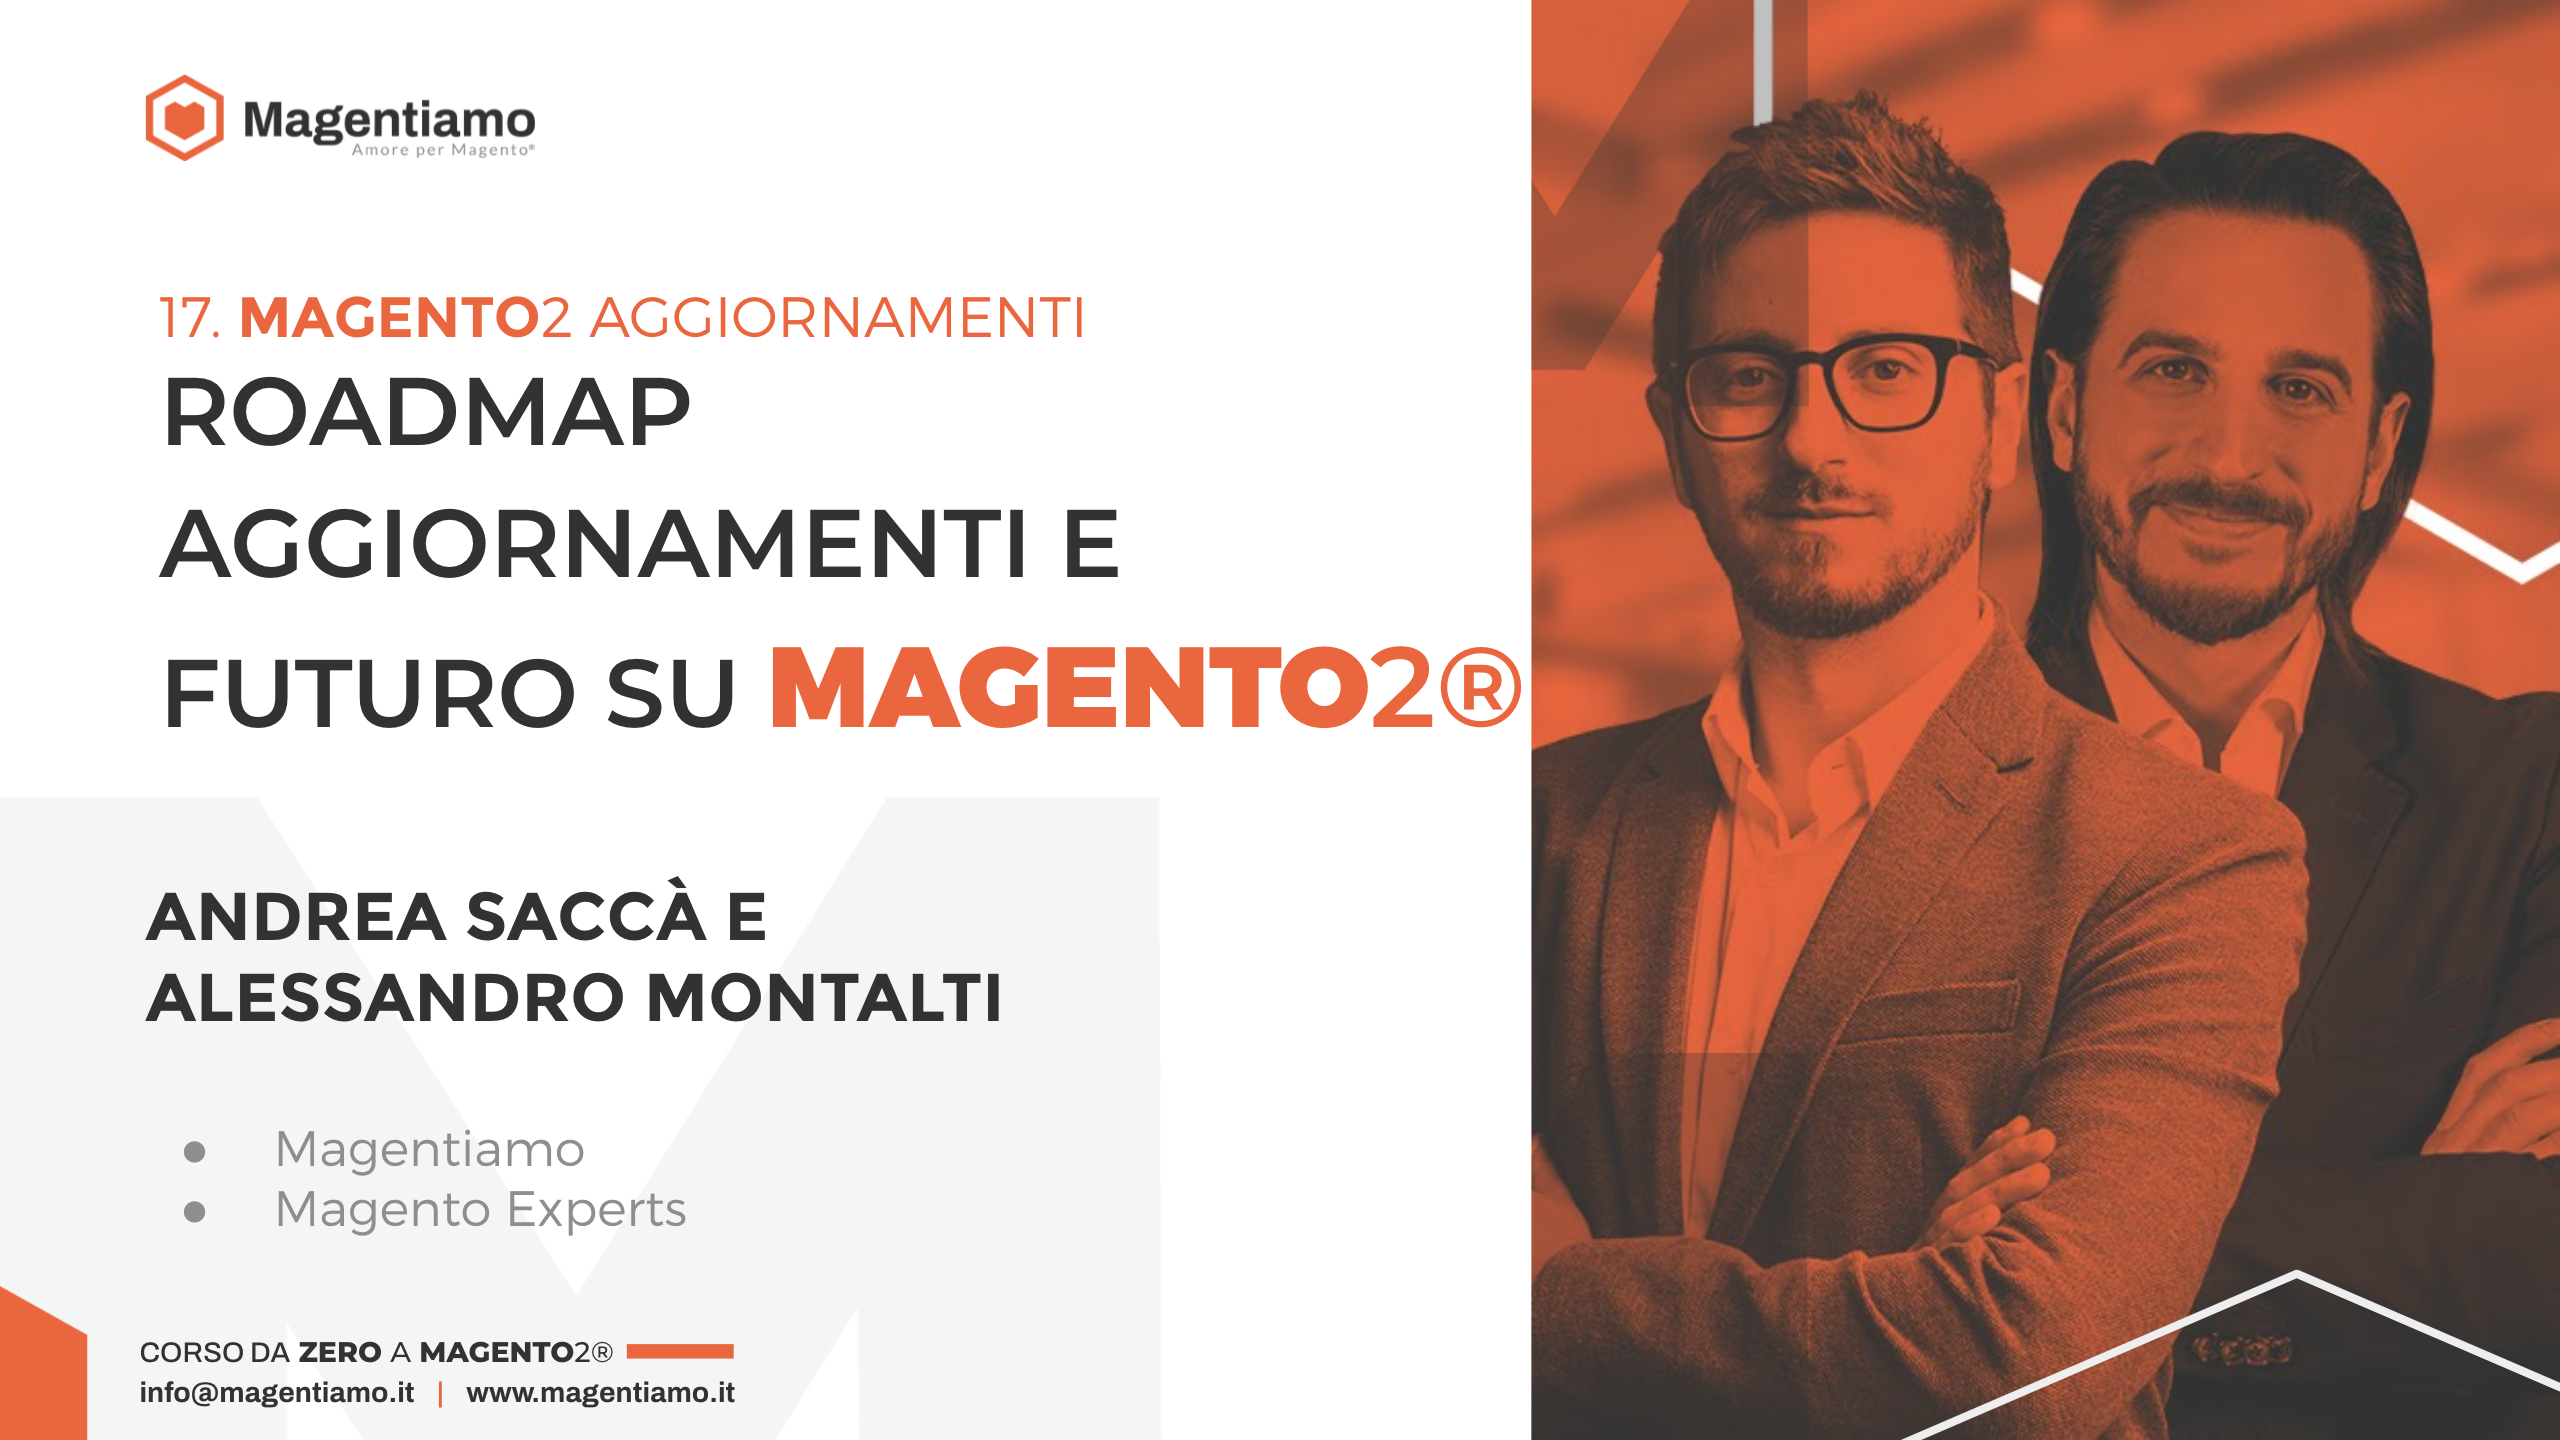 17. AGGIORNAMENTI - Roadmap aggiornamenti e futuro su Magento 2 - Andrea Saccà e Alessandro Montalti MAGENTIAMO